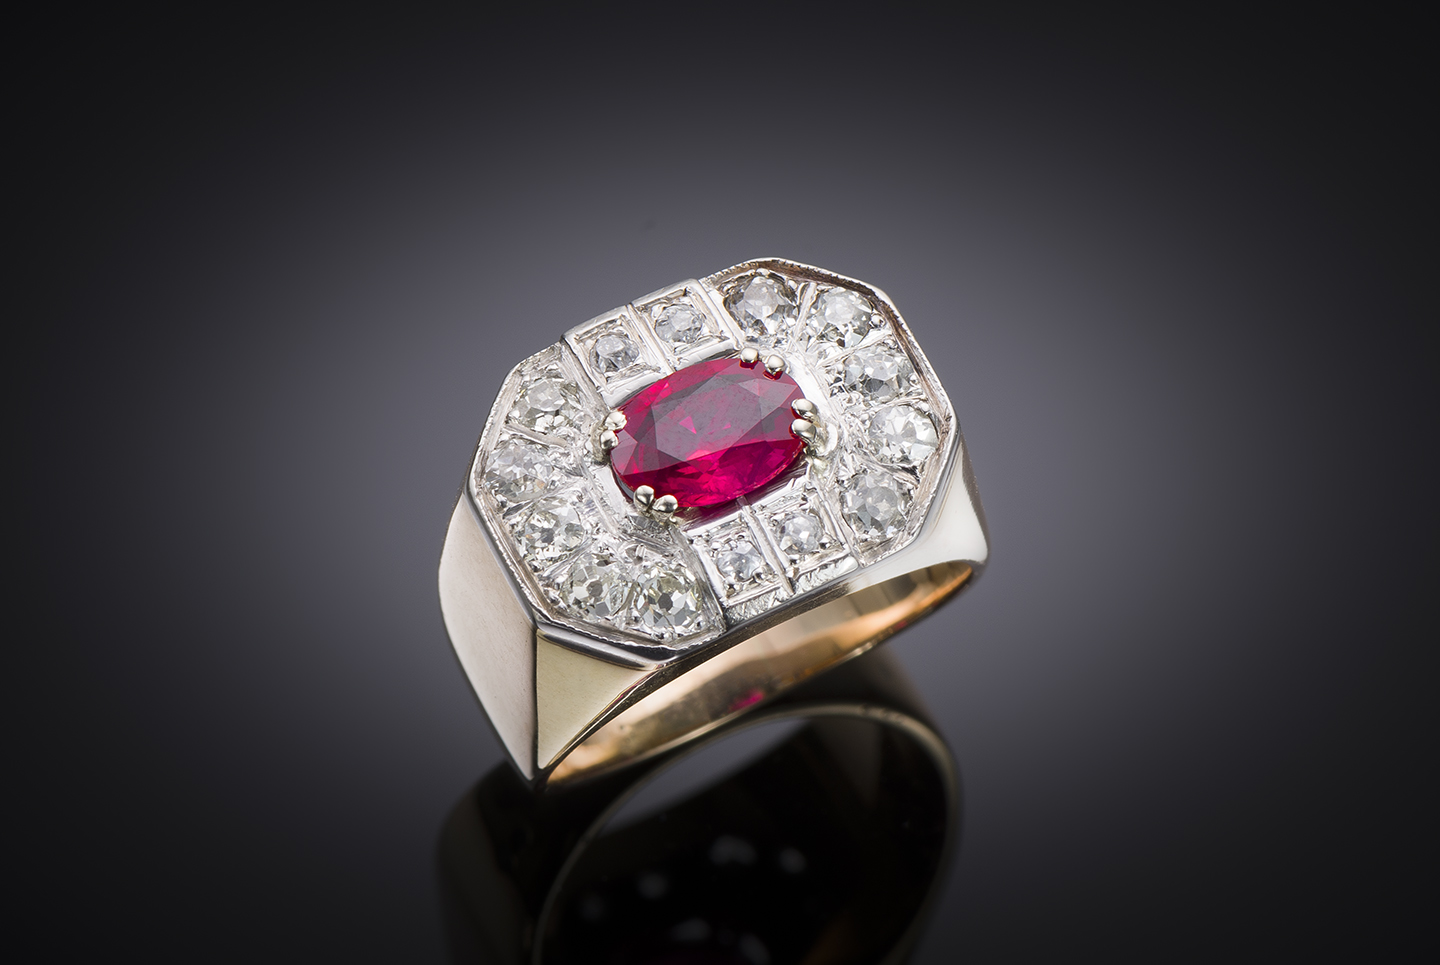 Bague rubis birman rouge intense (certificat laboratoire) diamants. Travail français vers 1940.-1